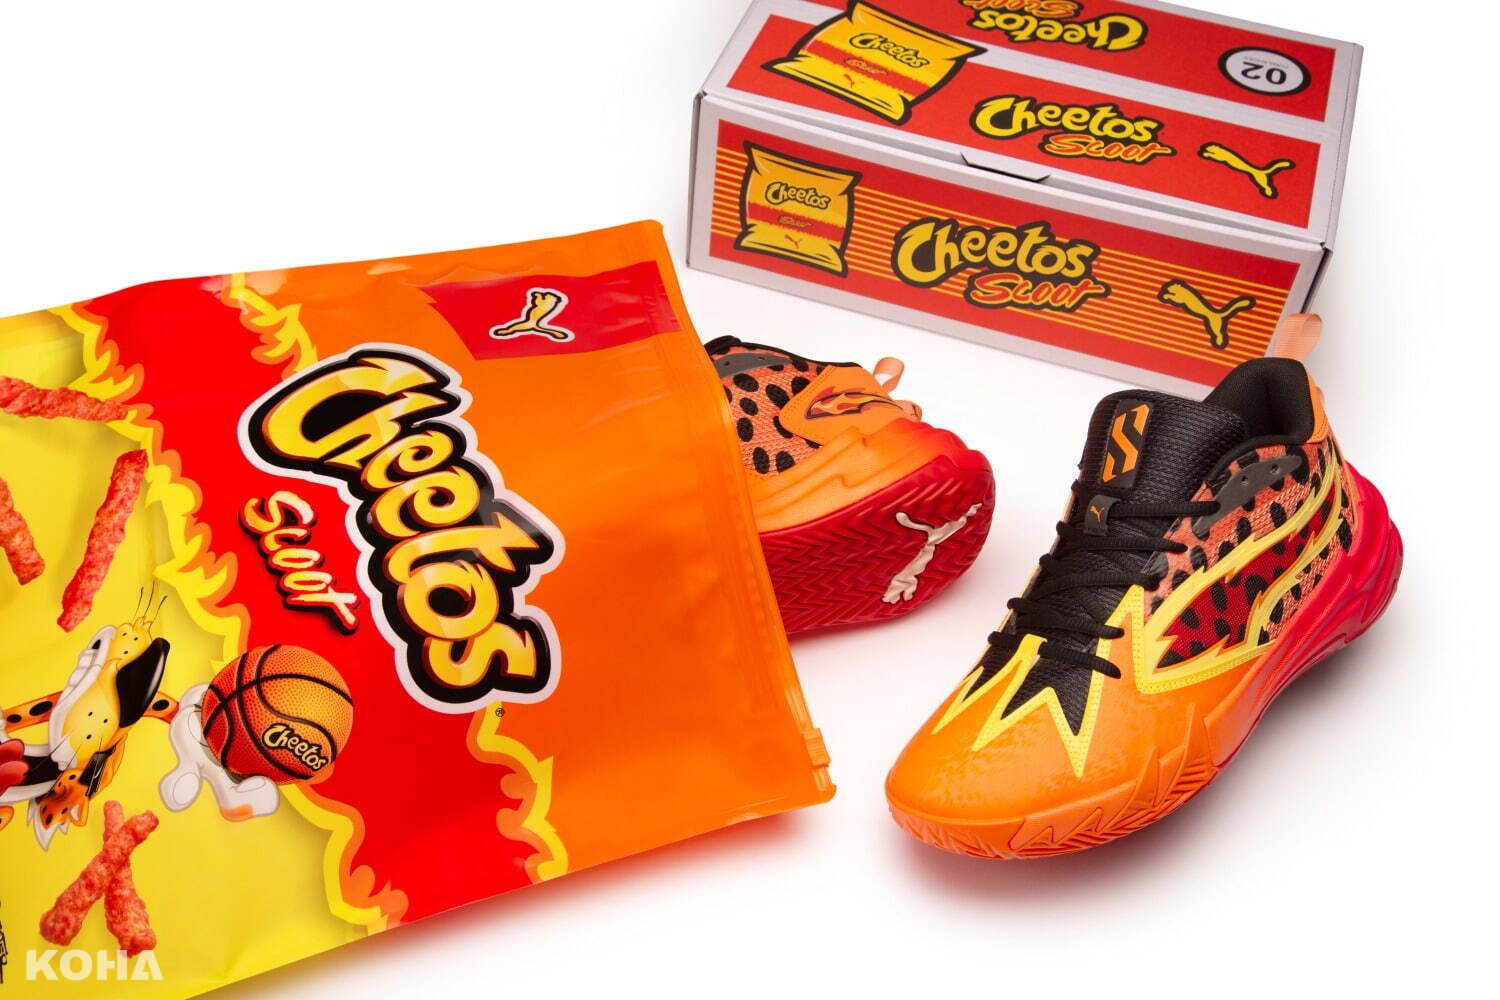 突破時尚界限！PUMA全新聯名運動鞋揭開「Cheetos 奇多」獨特風格，搶眼橘色鞋身登場